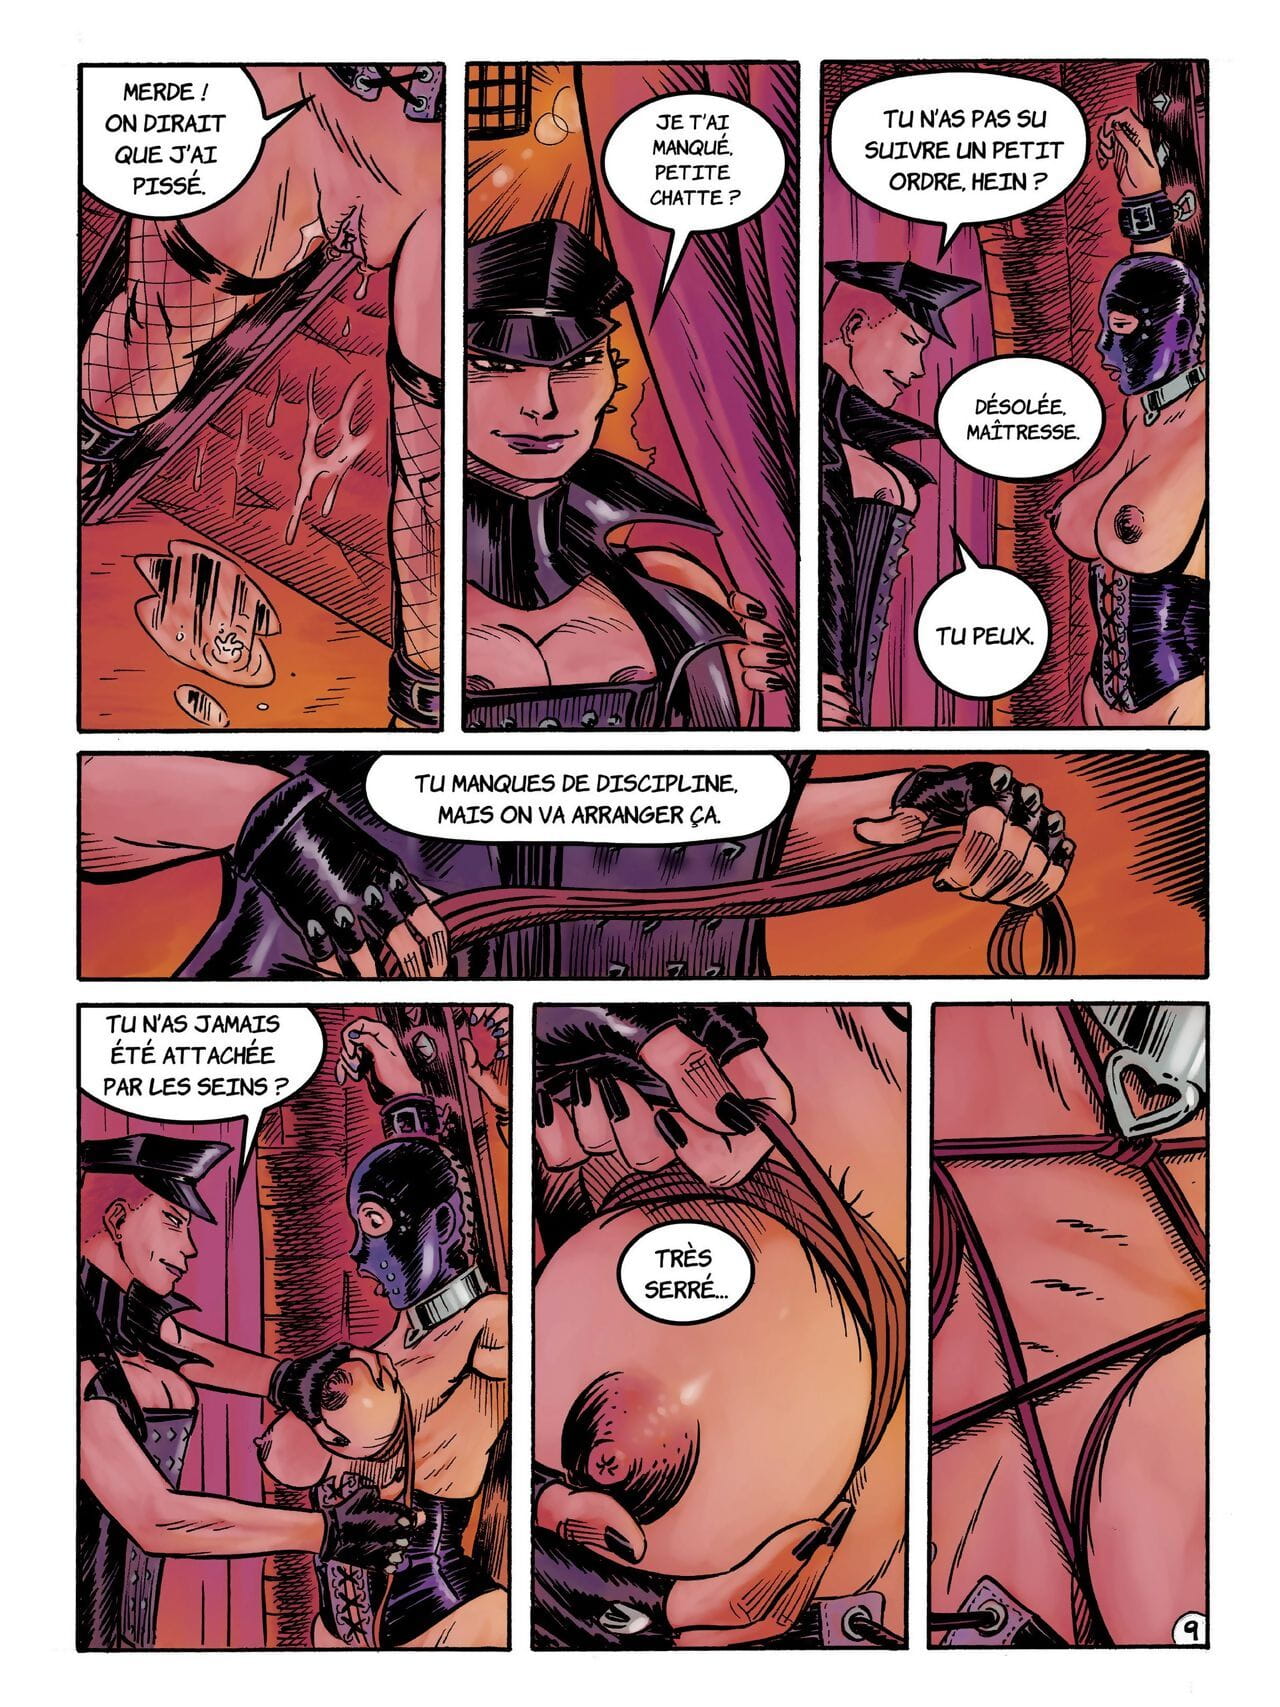 Kinky Slave #3 page 1